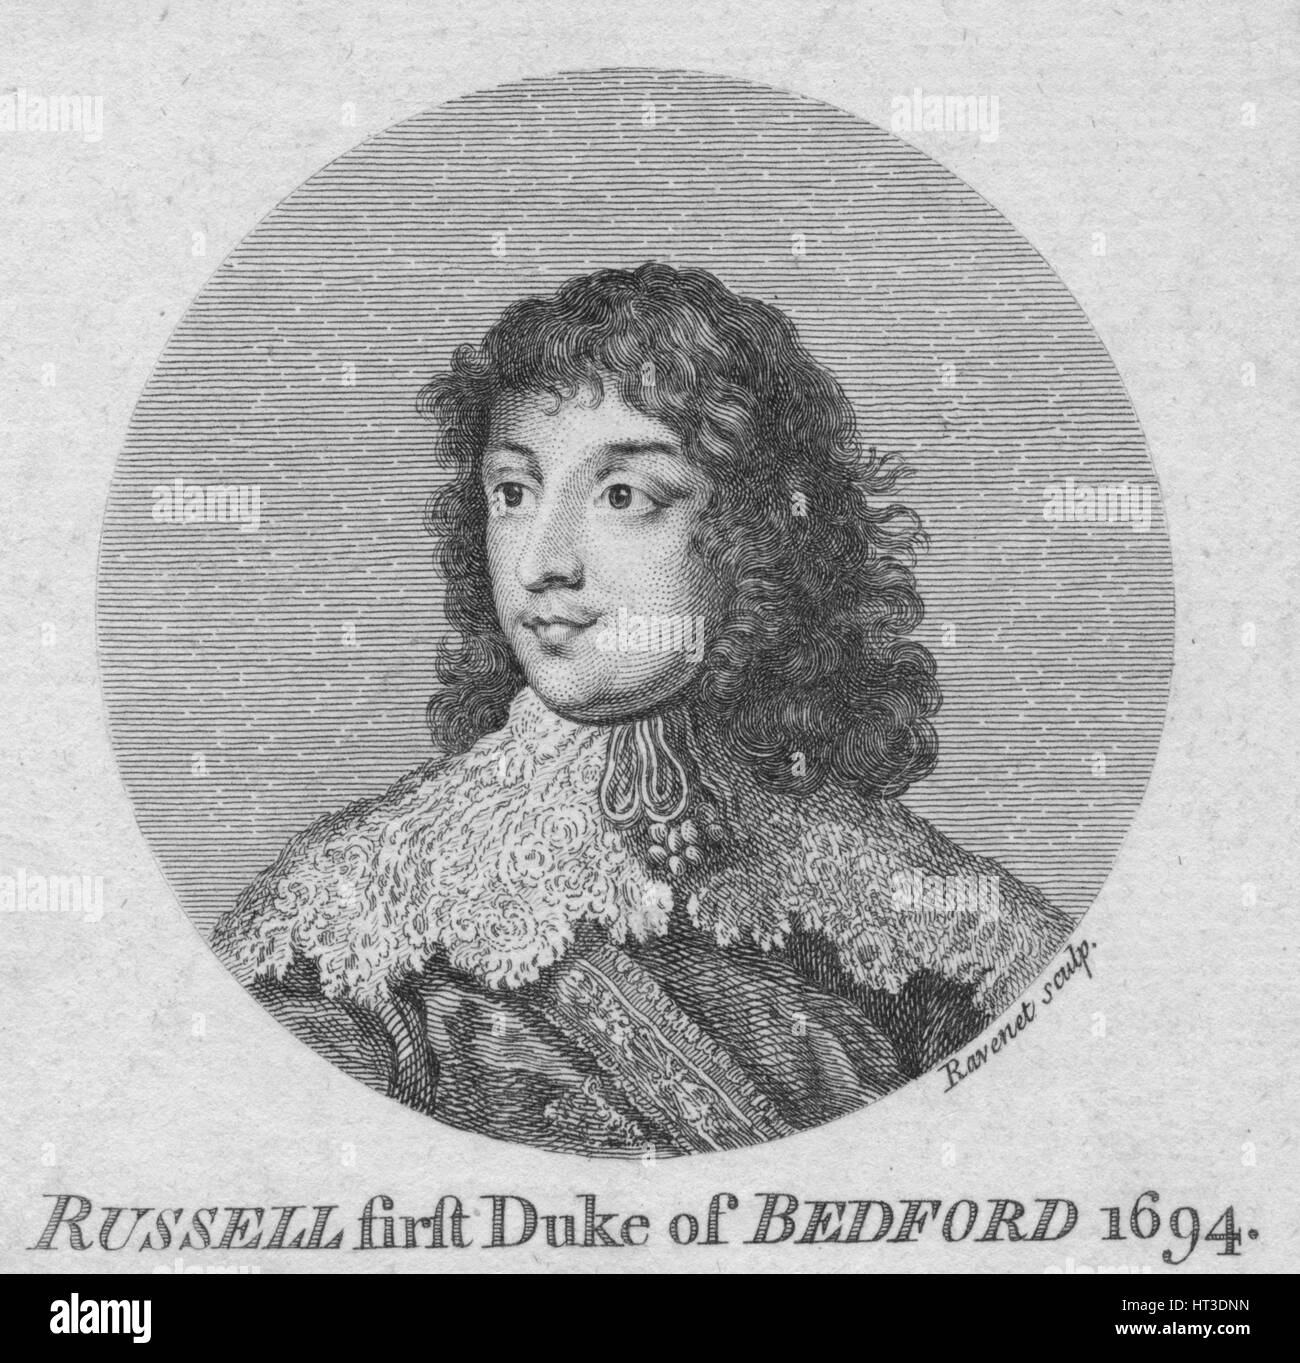 'William Russell, 1st Duke of Bedford', c1758. Artist: Simon François Ravenet. Stock Photo